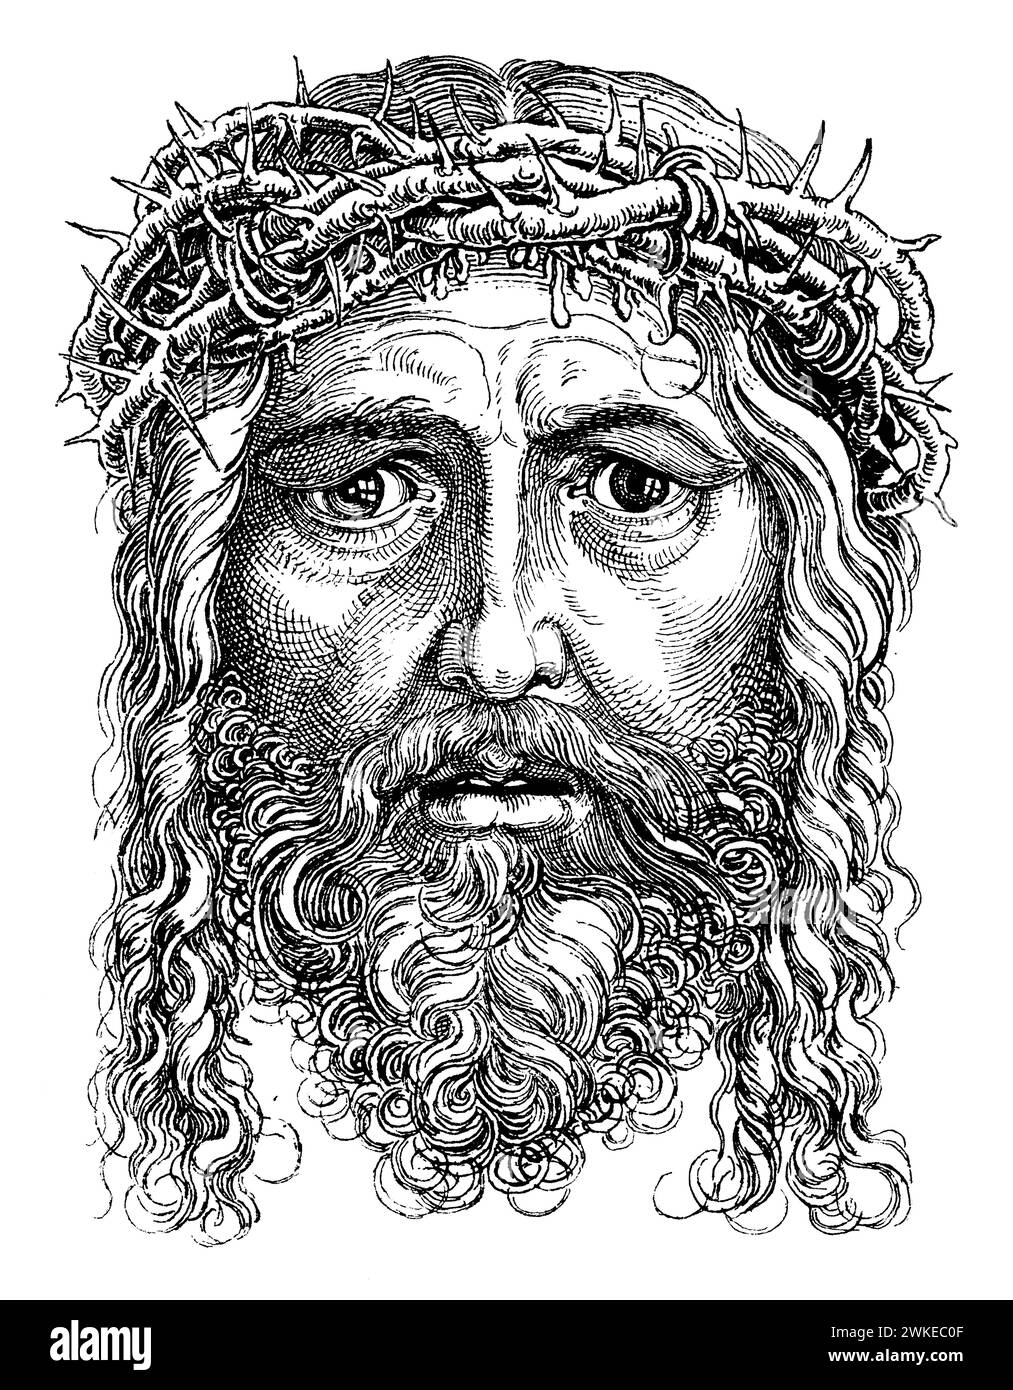 Cabeza de Jesucristo con la corona de espinas. Grabado de 1888. Author: Albrecht Dürer. Stock Photo